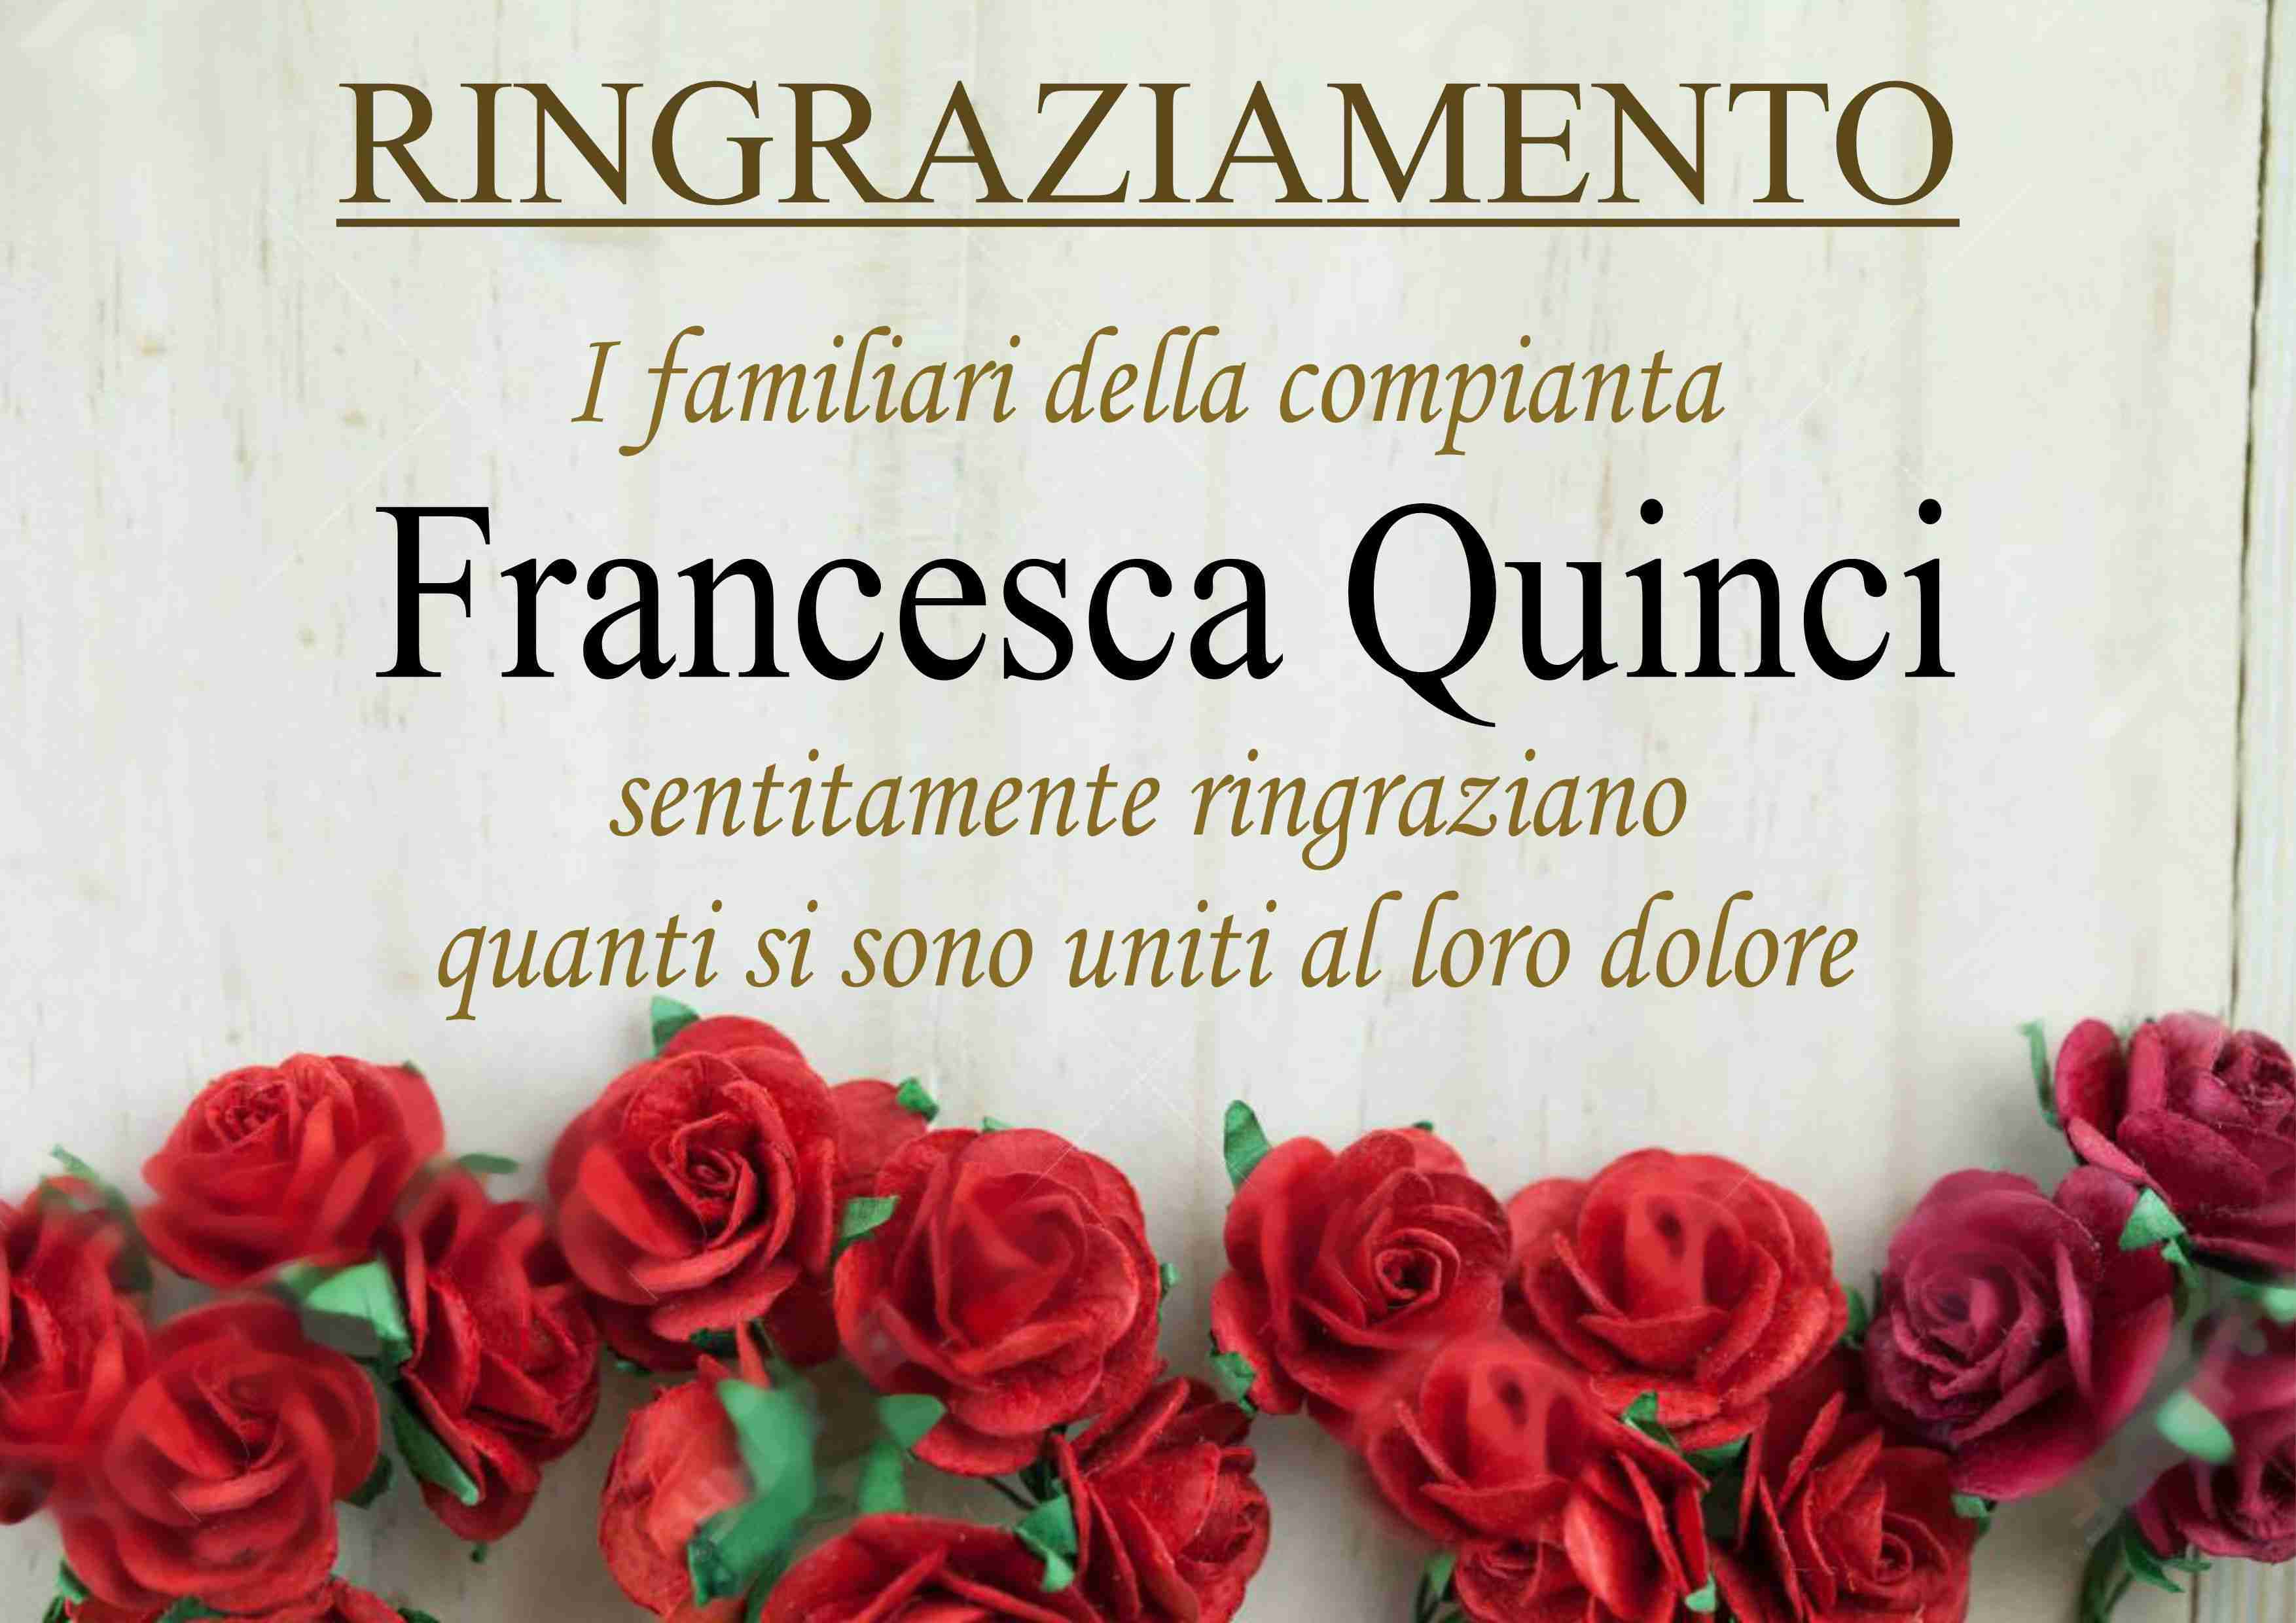 Francesca Quinci